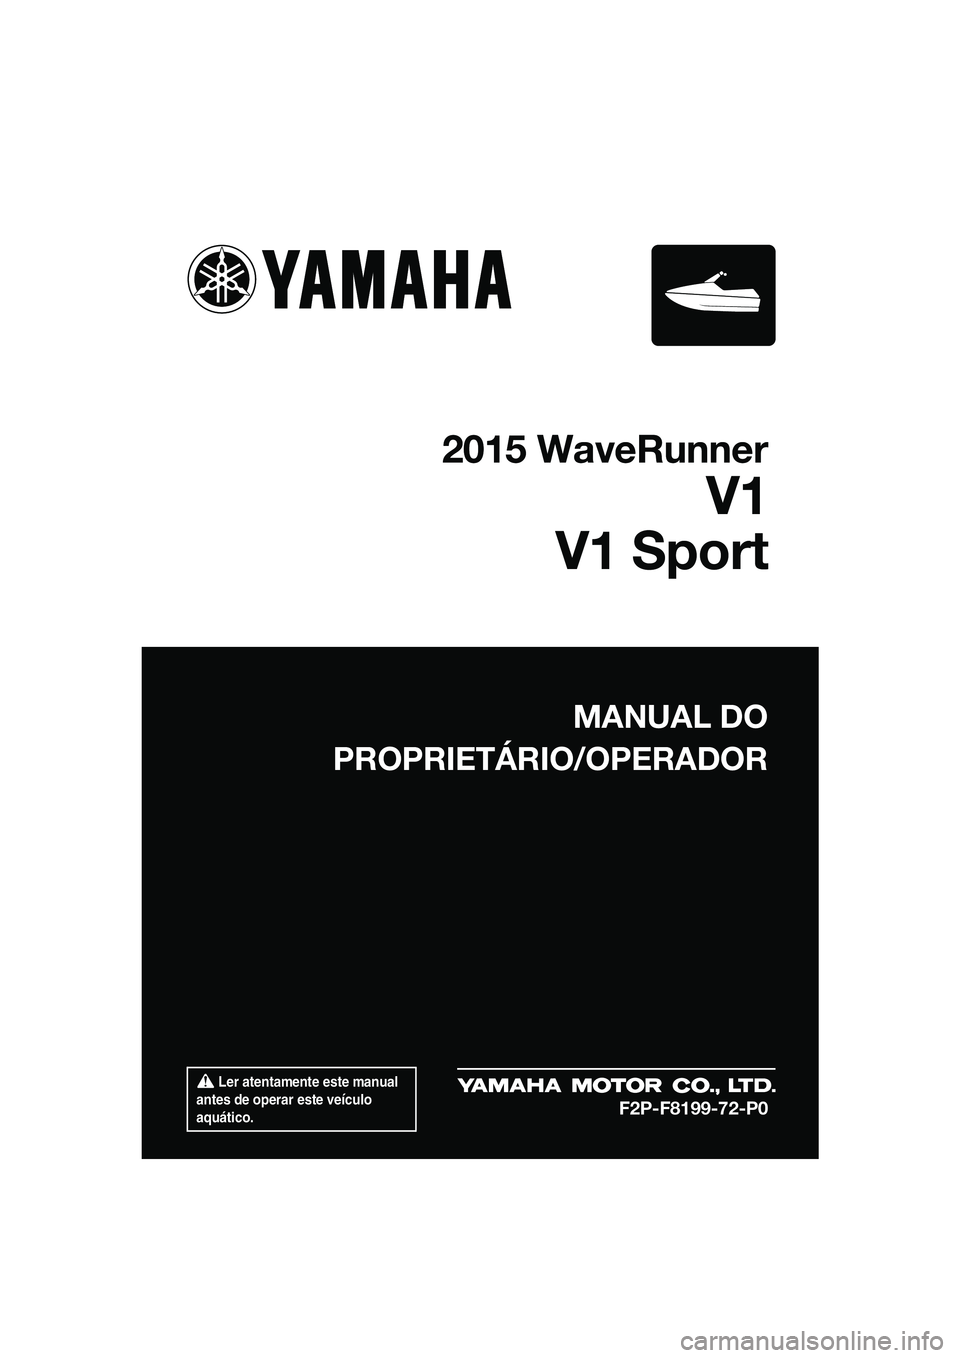 YAMAHA V1 SPORT 2015  Manual de utilização (in Portuguese)  Ler atentamente este manual 
antes de operar este veículo 
aquático.
MANUAL DO
PROPRIETÁRIO/OPERADOR
2015 WaveRunner
V1
V1 Sport
F2P-F8199-72-P0
UF2P72P0.book  Page 1  Monday, August 25, 2014  2:3